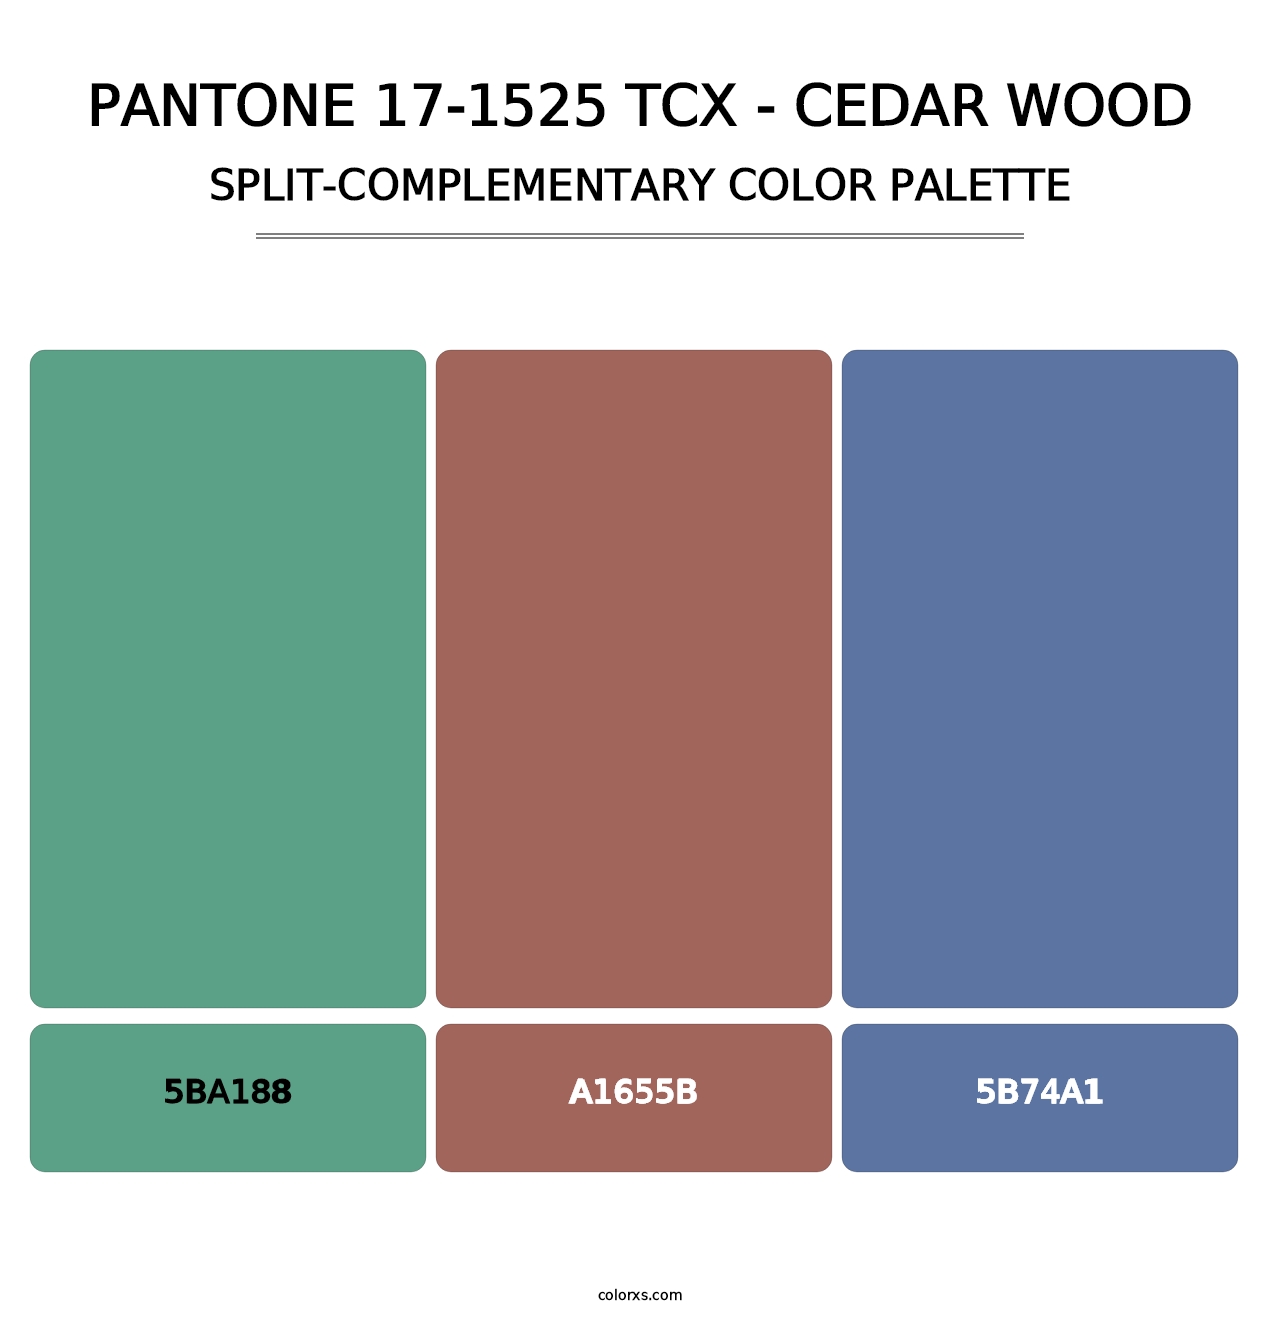 PANTONE 17-1525 TCX - Cedar Wood - Split-Complementary Color Palette